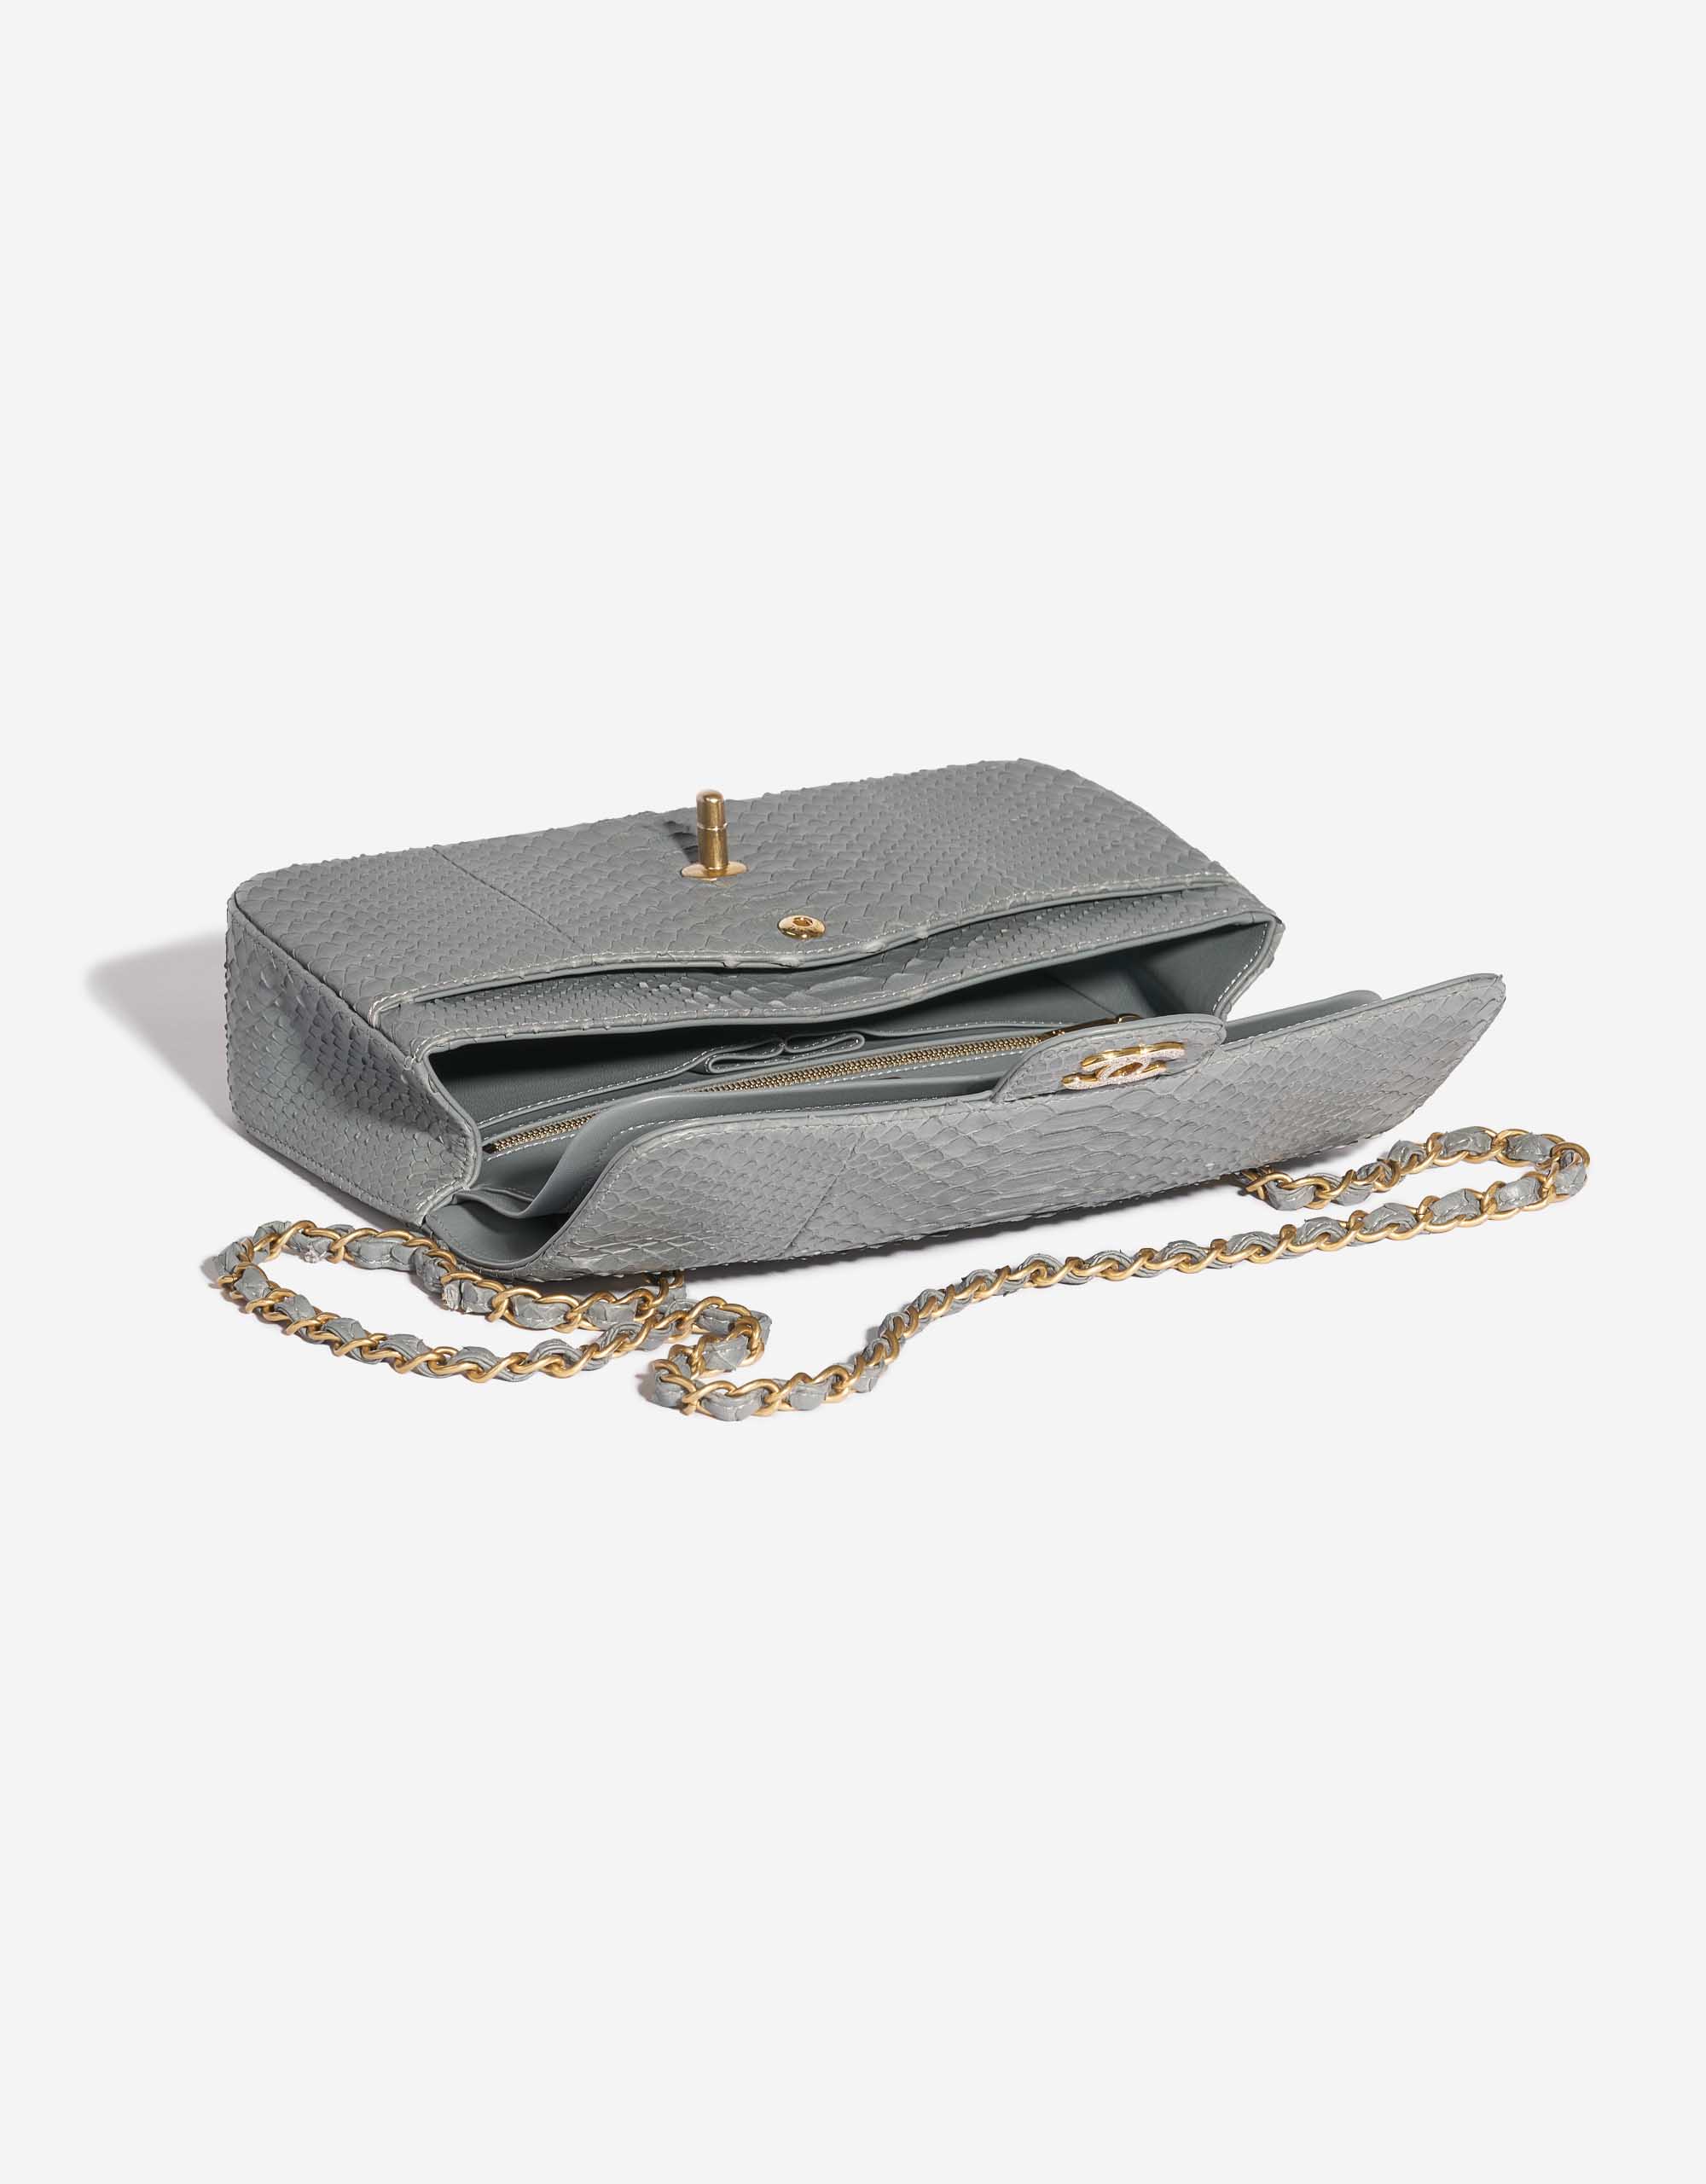 Pre-owned Chanel Tasche Timeless Medium Python Grau, 18k Gold und 2,5ct Diamanten Grau innen | Verkaufen Sie Ihre Designer-Tasche auf Saclab.com